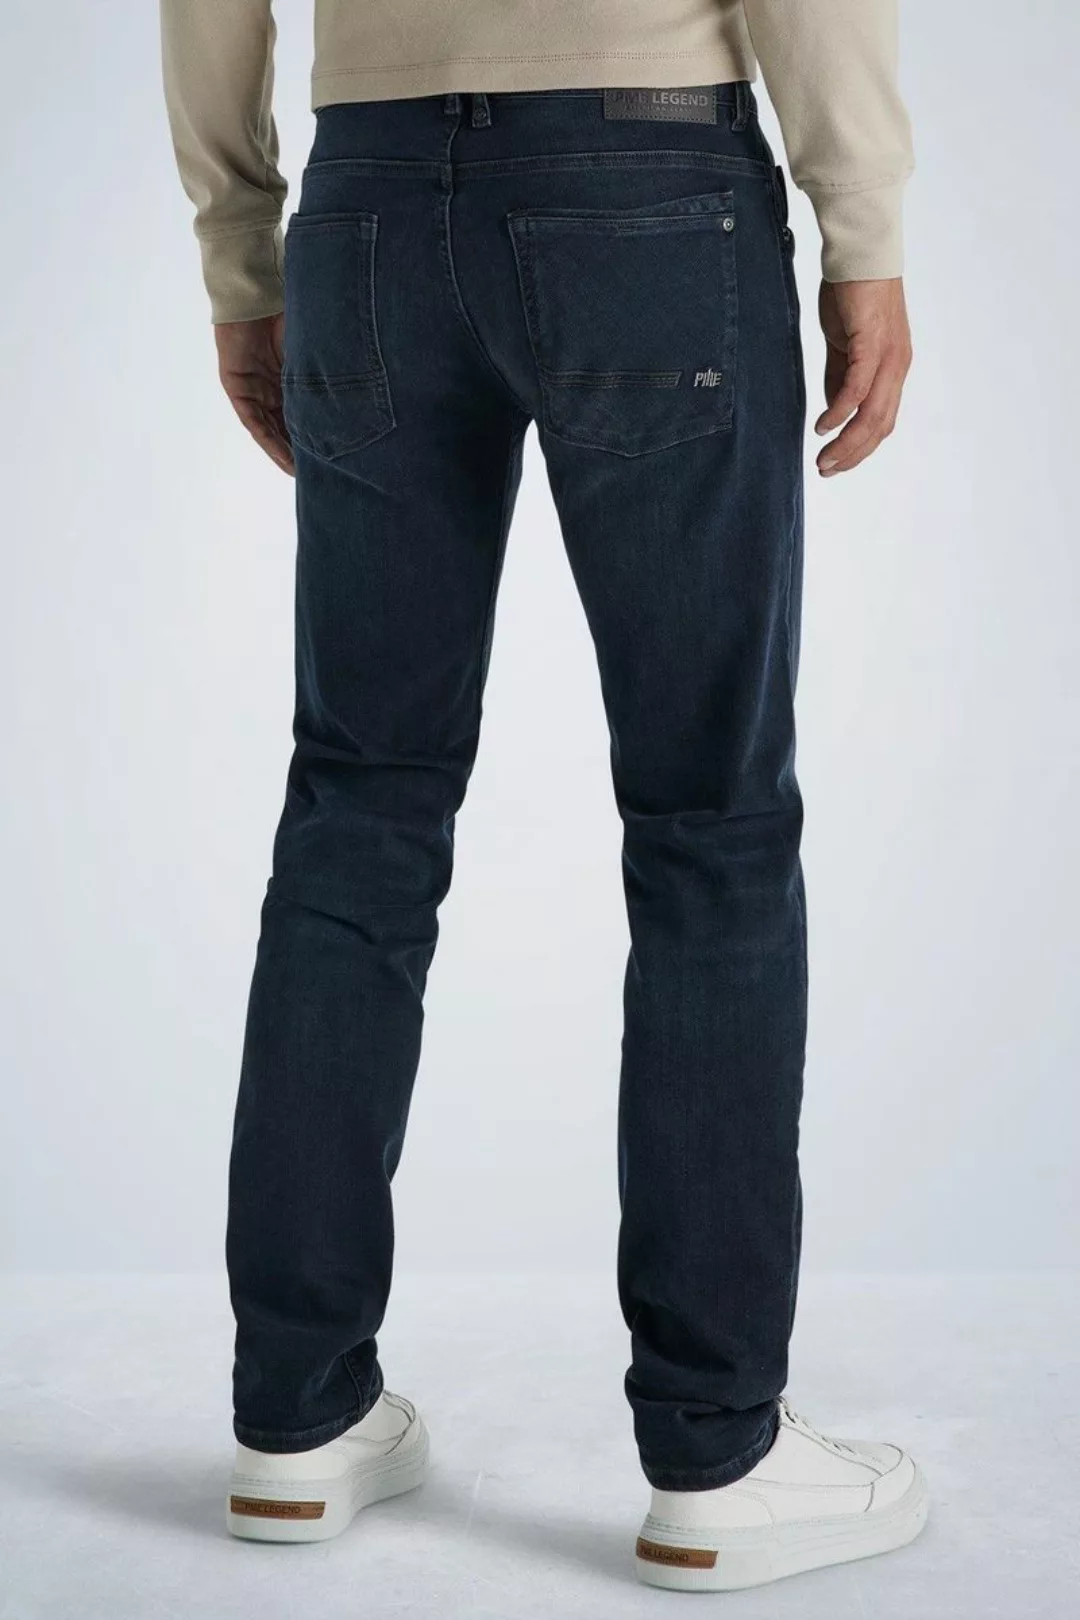 PME Legend Commander 3.0 Jeans Blau Schwarz - Größe W 34 - L 34 günstig online kaufen